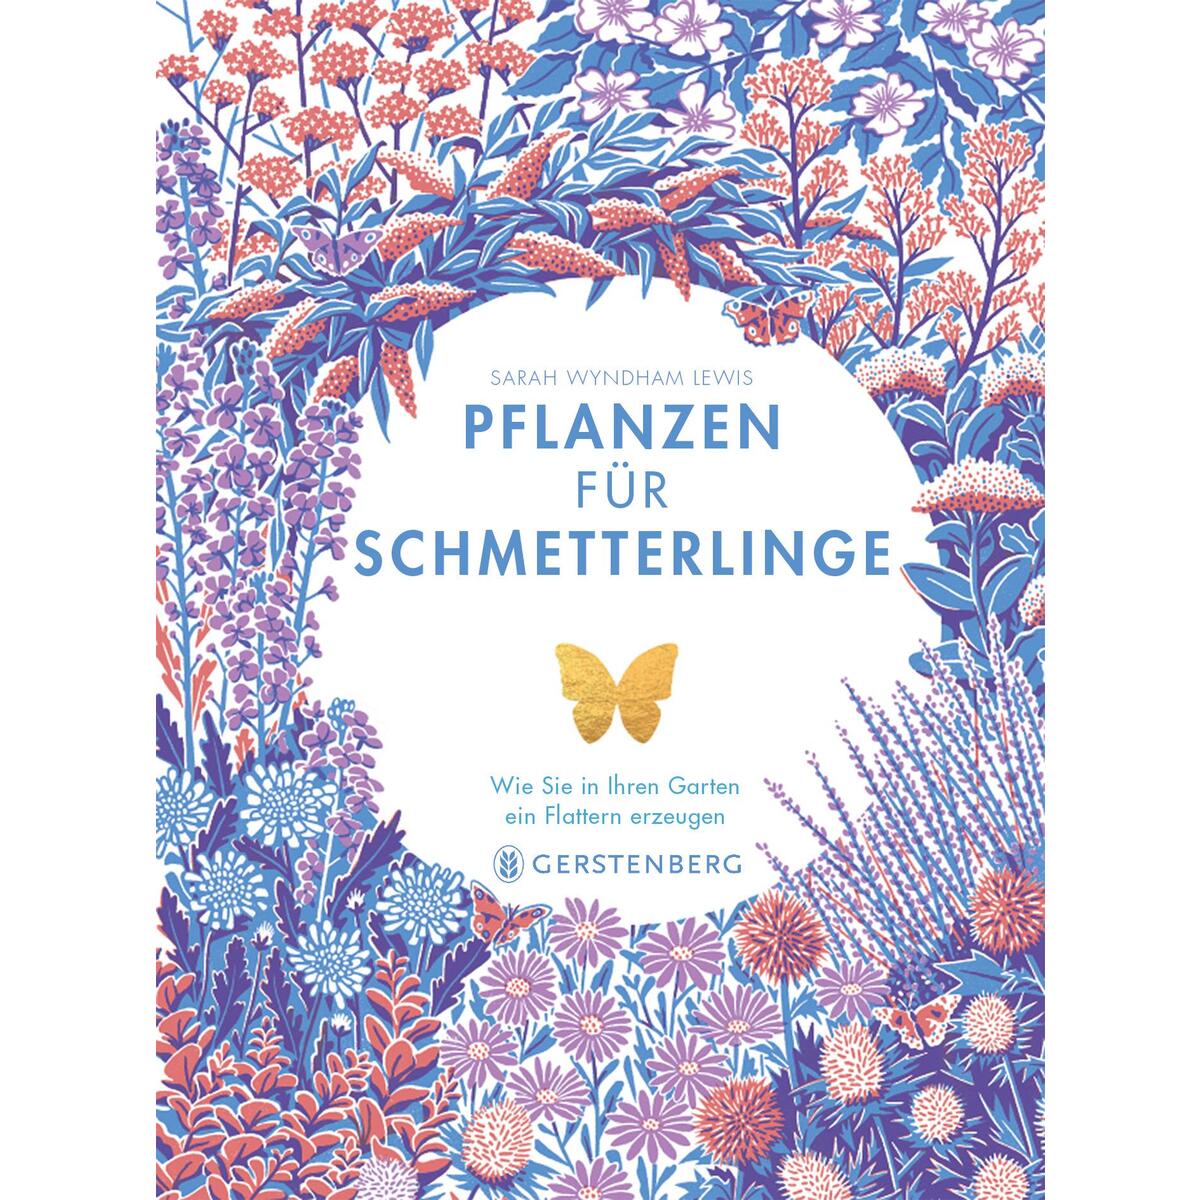 Pflanzen für Schmetterlinge von Gerstenberg Verlag